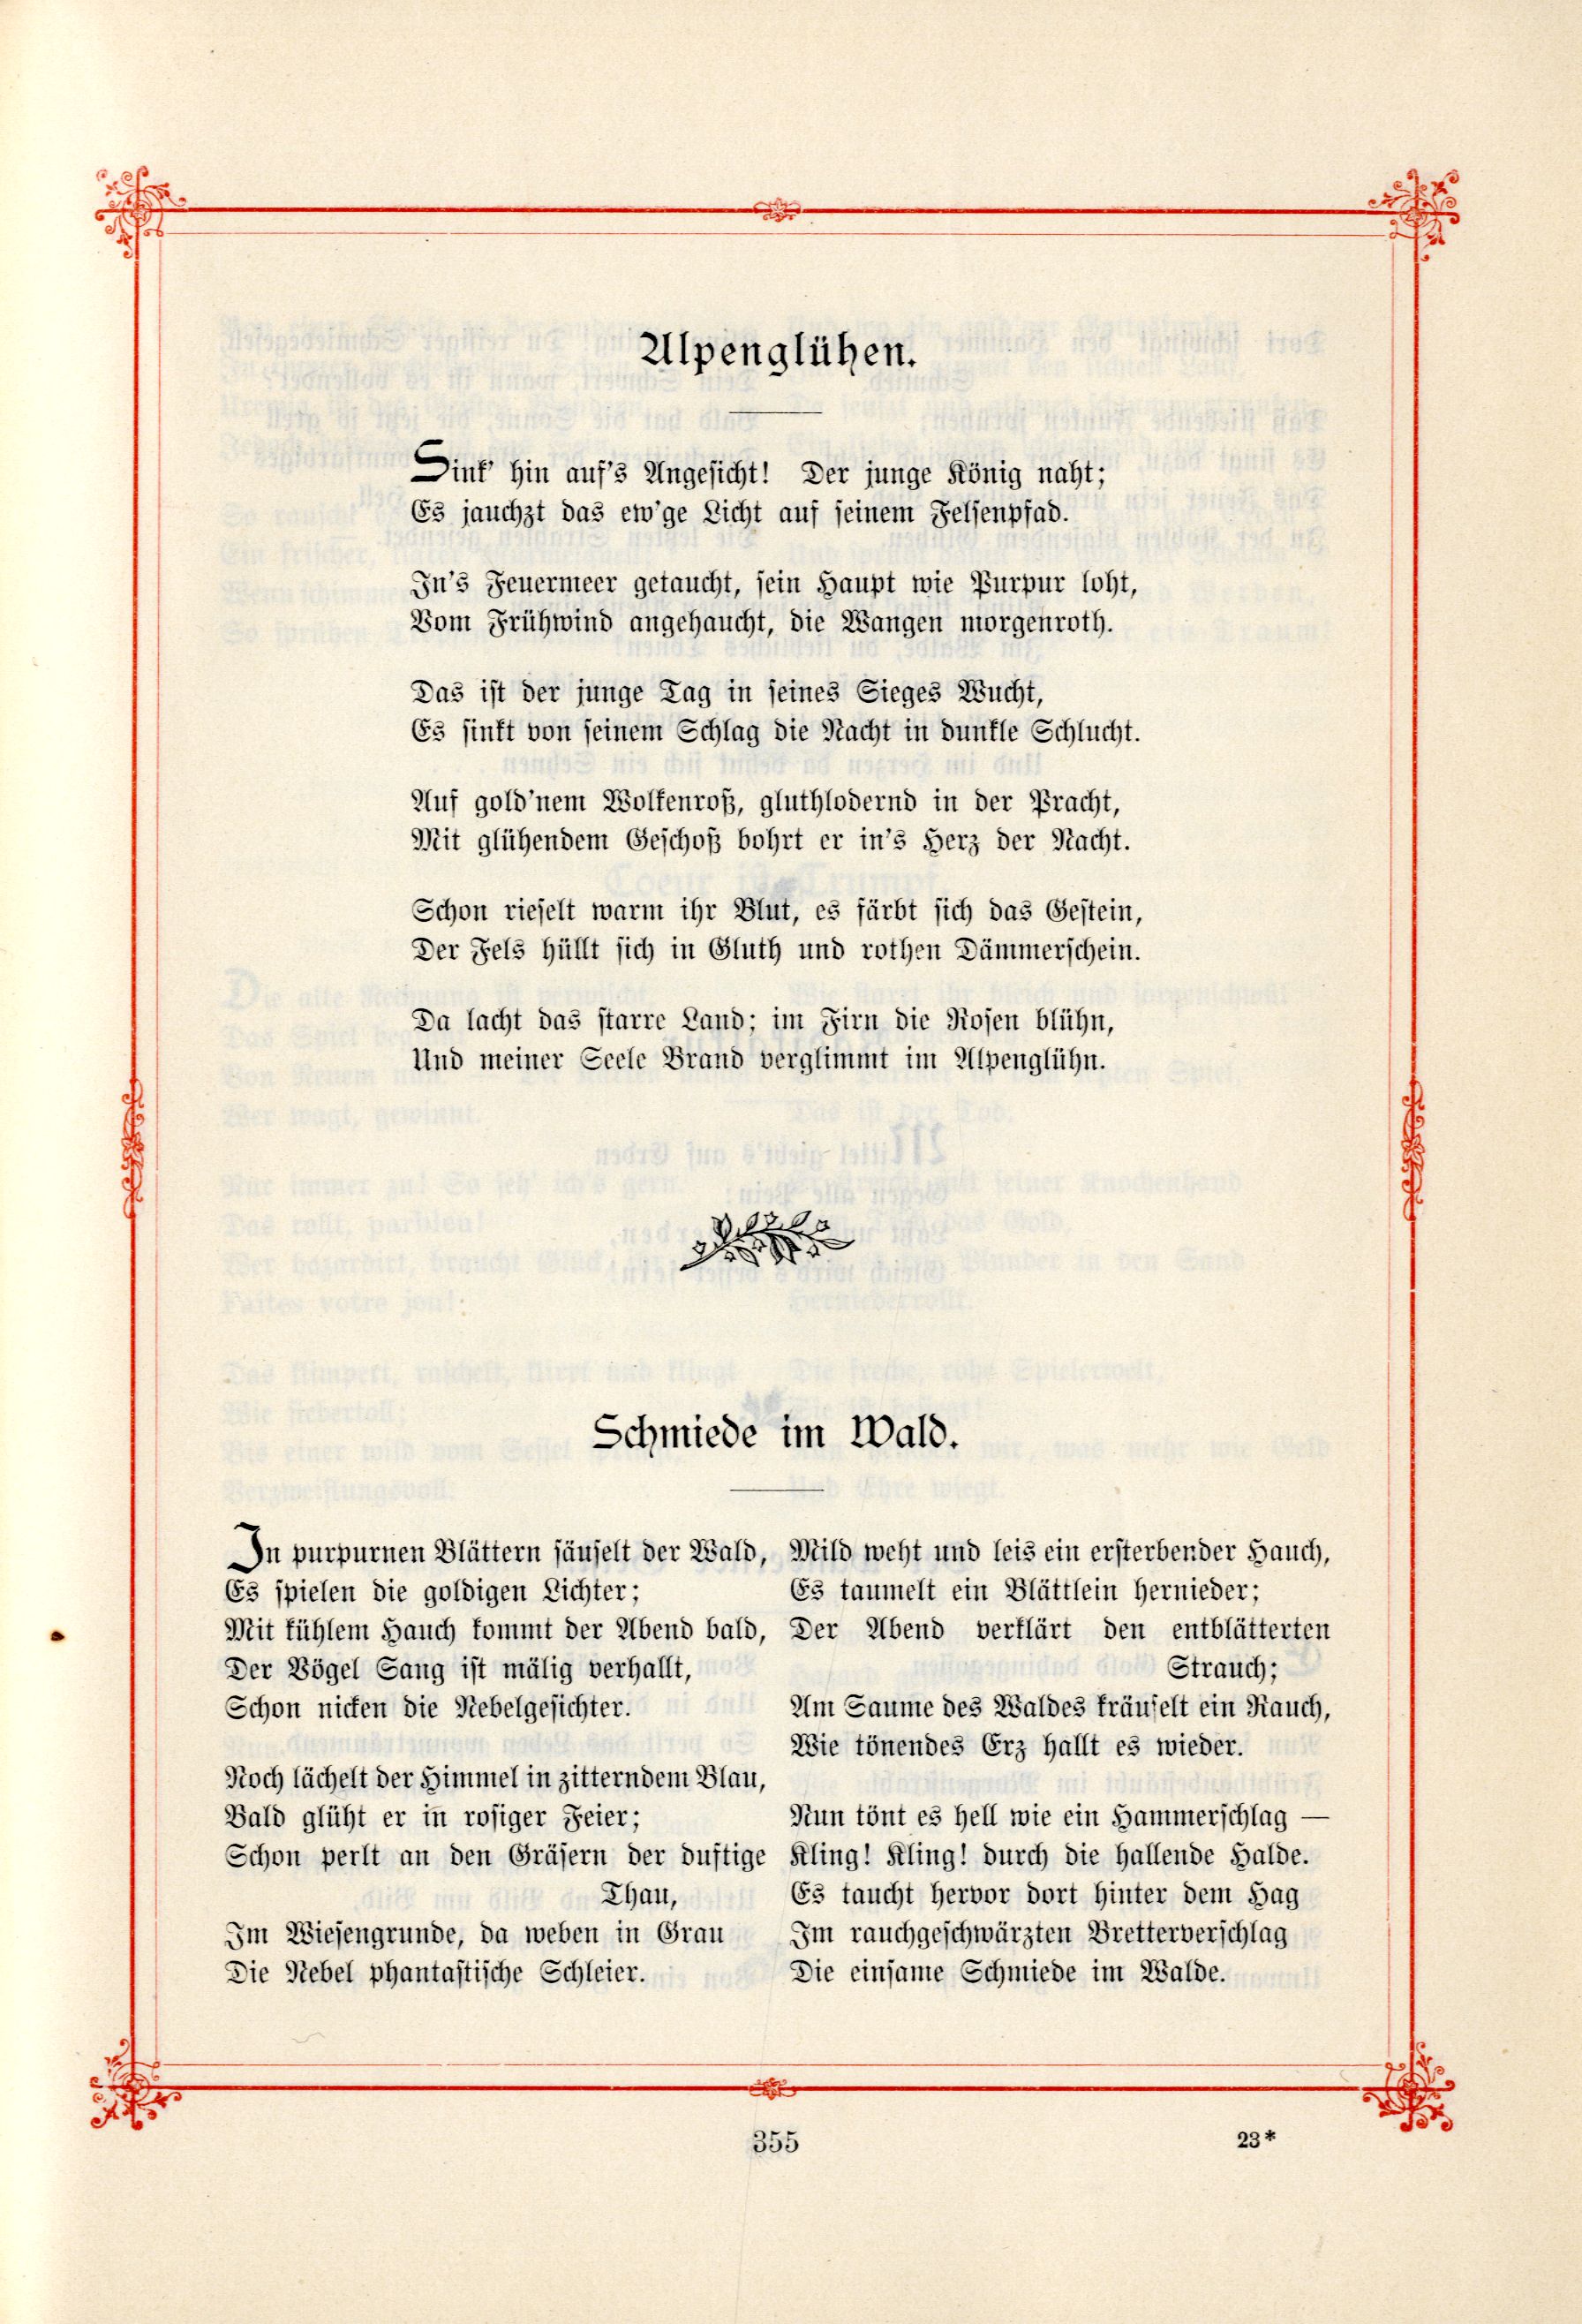 Das Baltische Dichterbuch (1895) | 401. (355) Main body of text